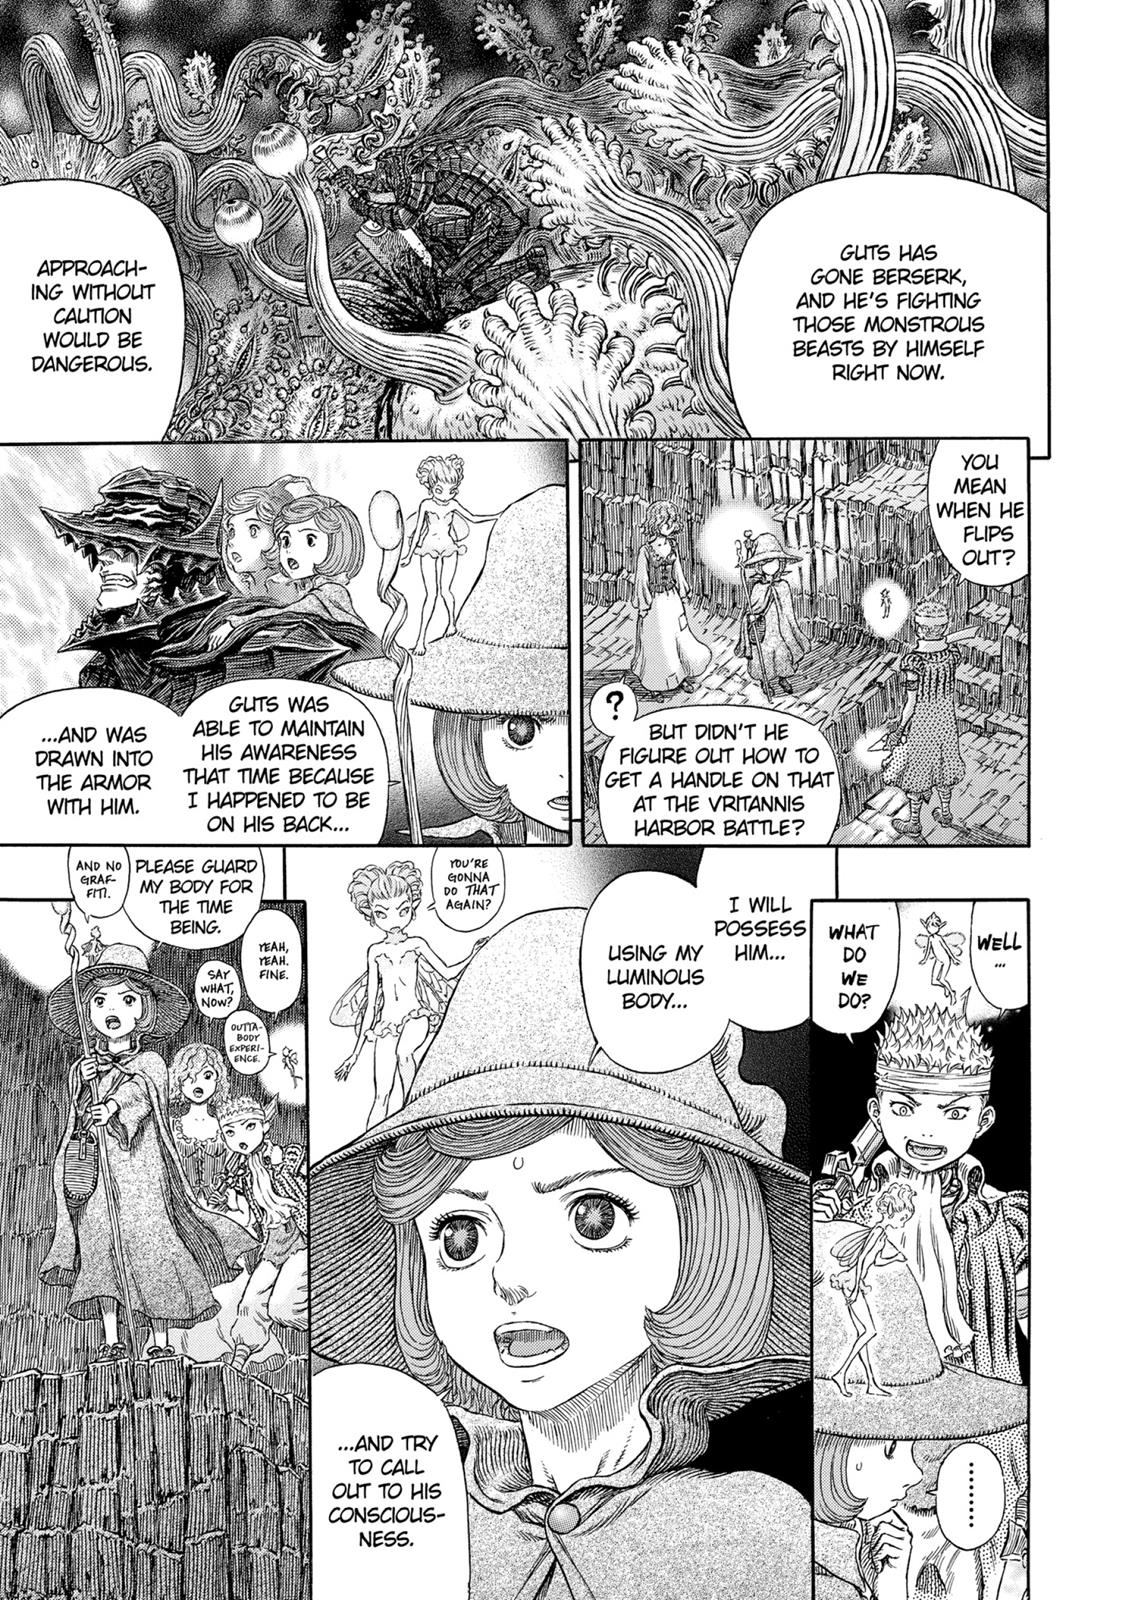 Berserk Manga Chapter 316 image 19